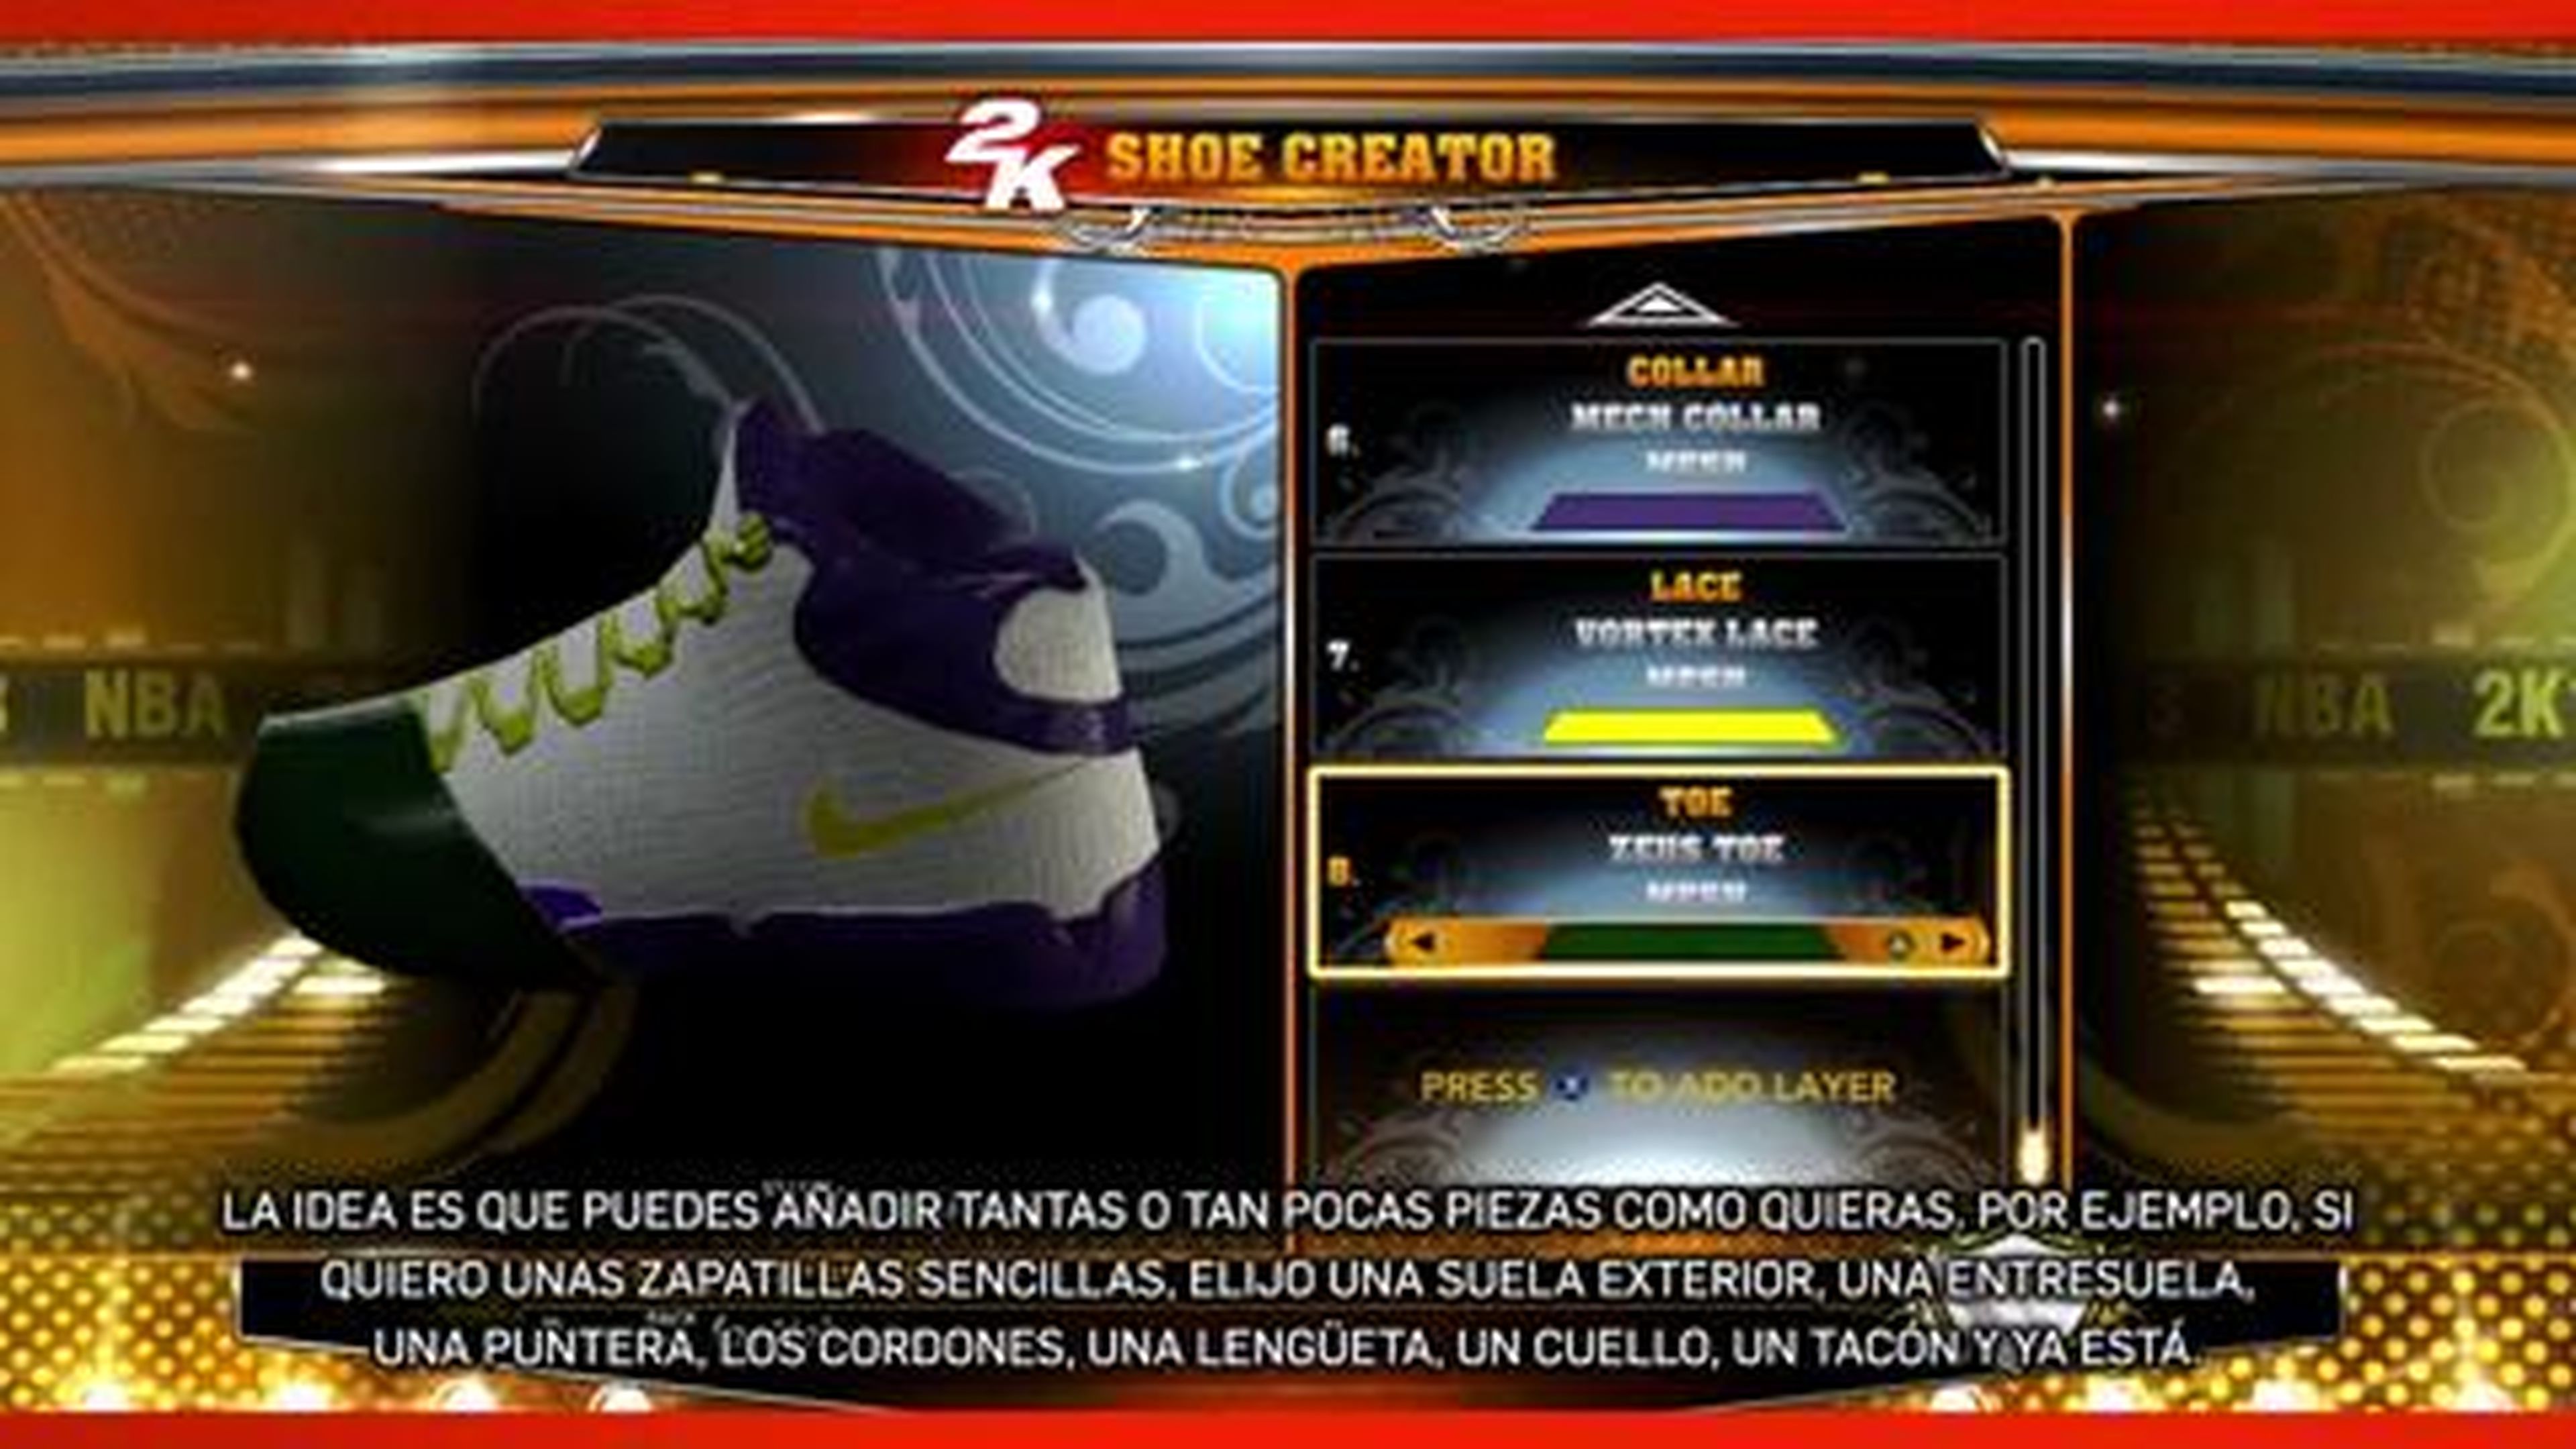 Tráiler del calzado de NBA 2K13 en HobbyConsolas.com